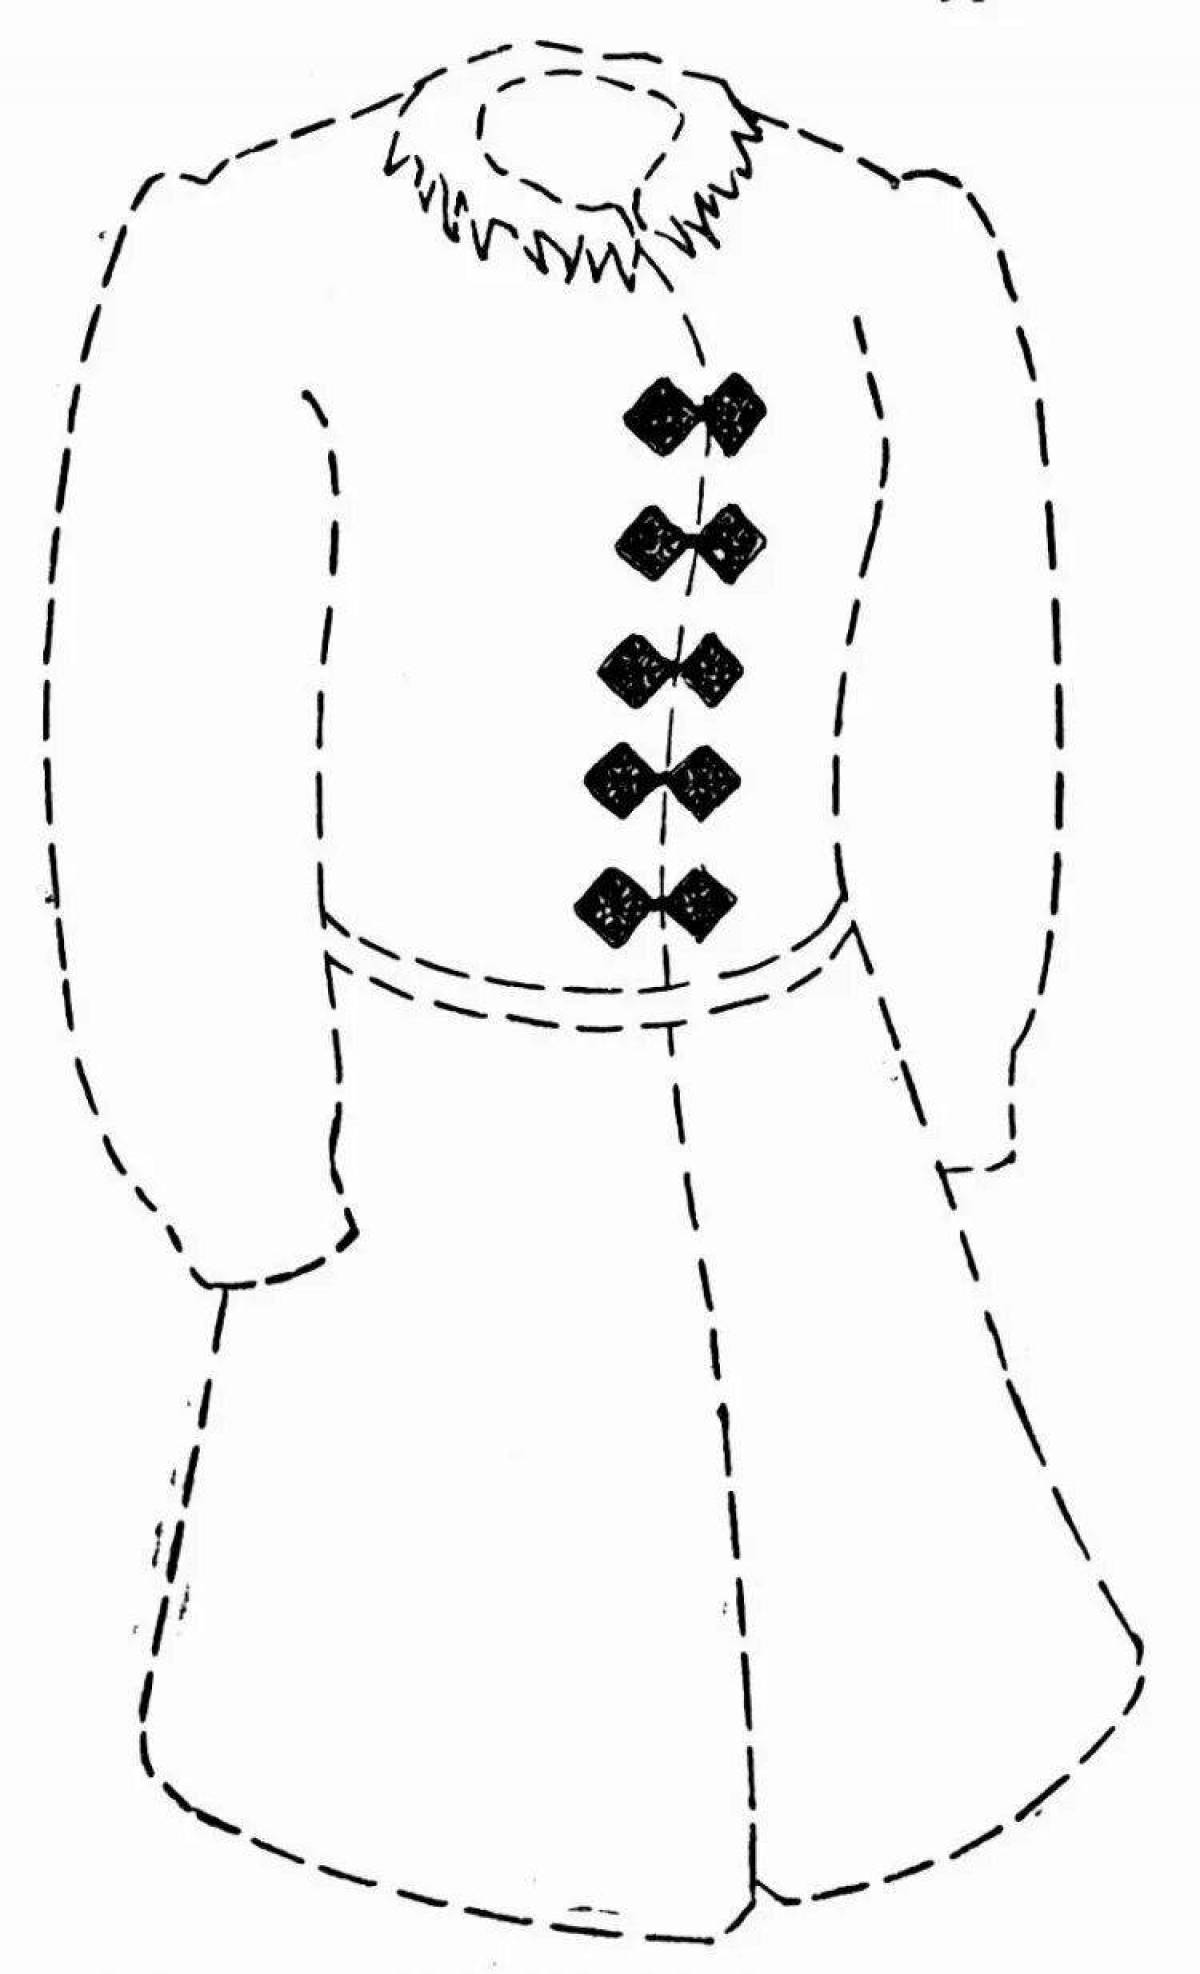 Манящий башкирский национальный костюм